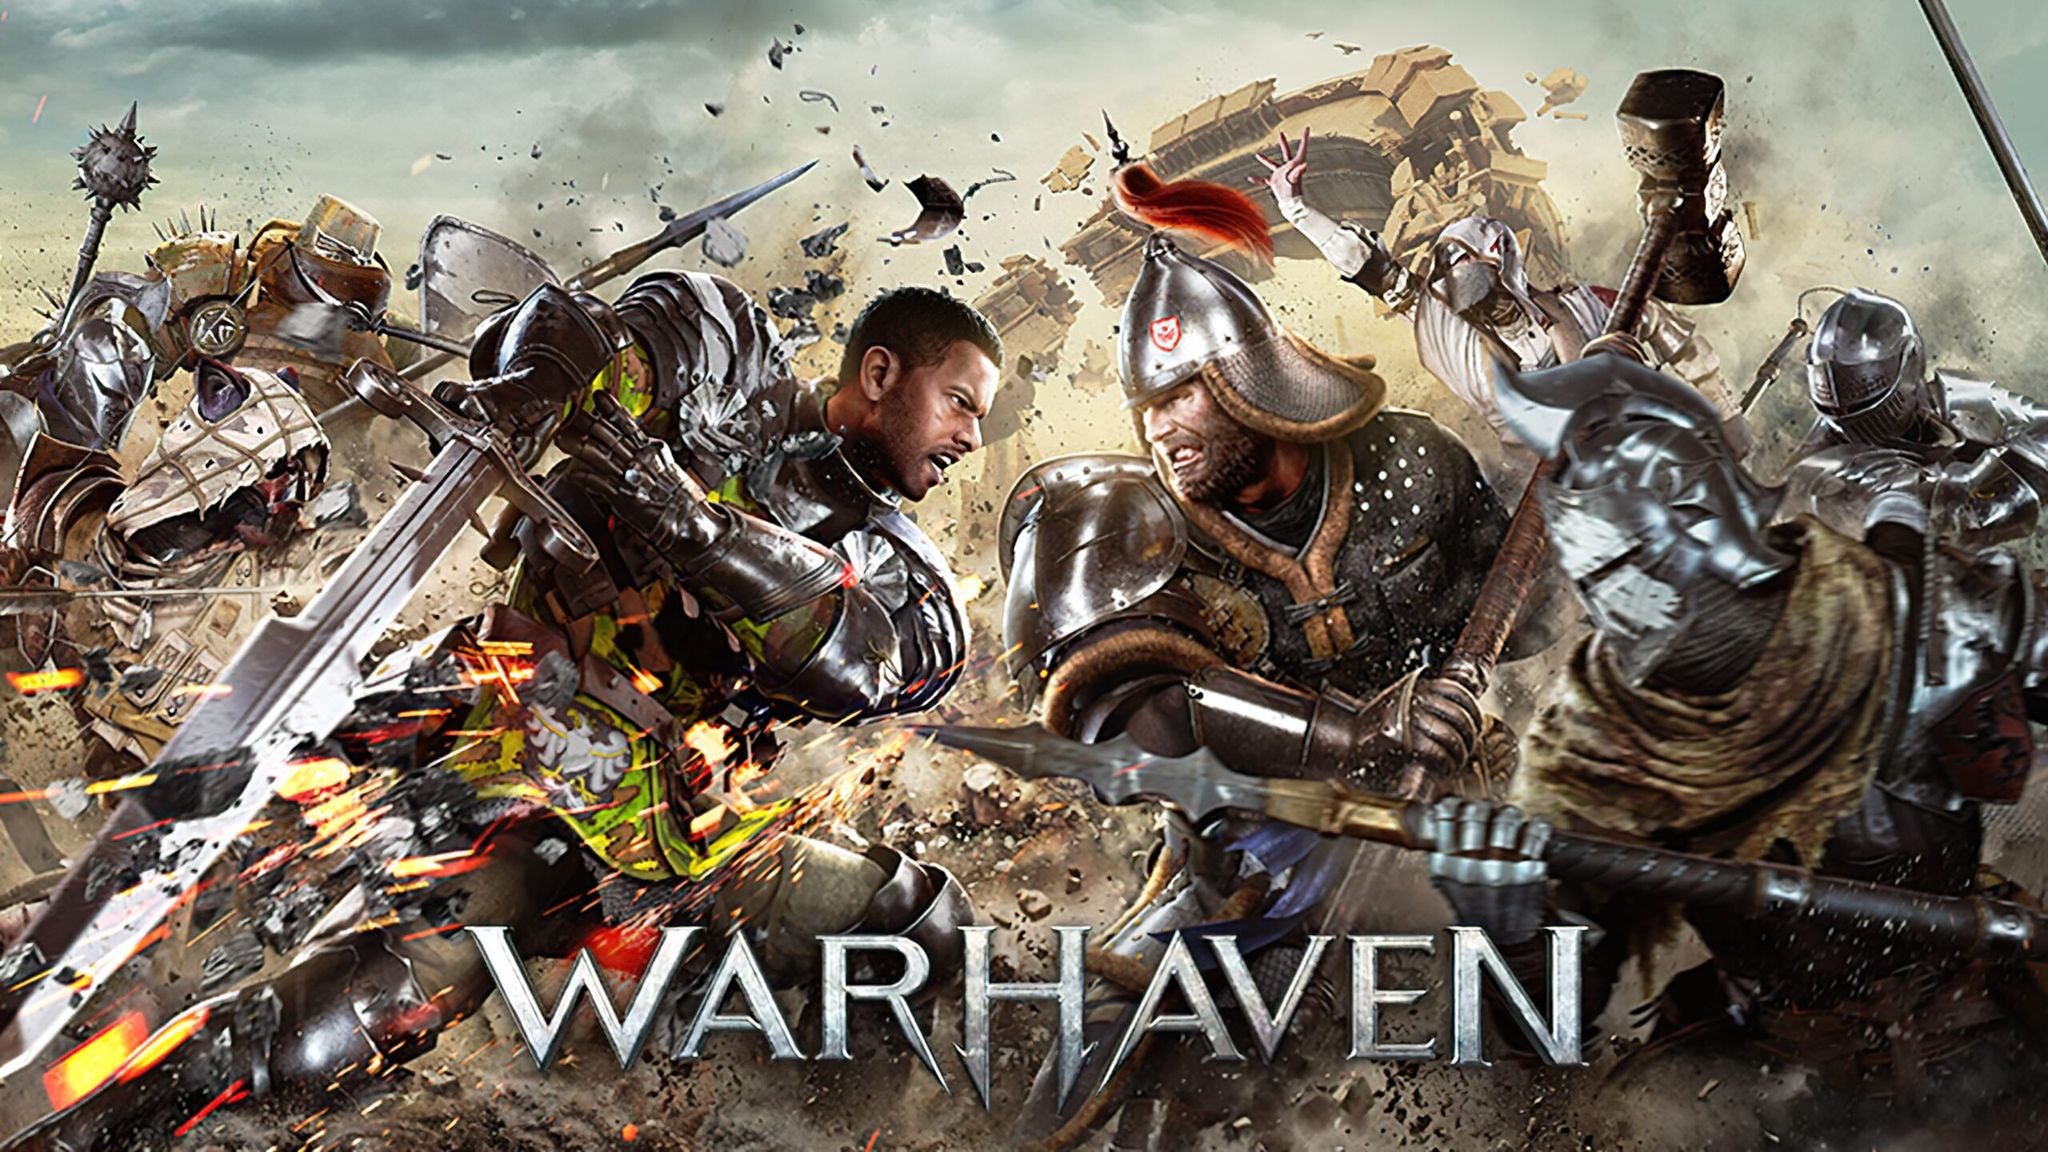 Warhaven: Game nhập vai kiếm hiệp đầy hấp dẫn mà bạn có thể chơi miễn phí trong tháng 10 này